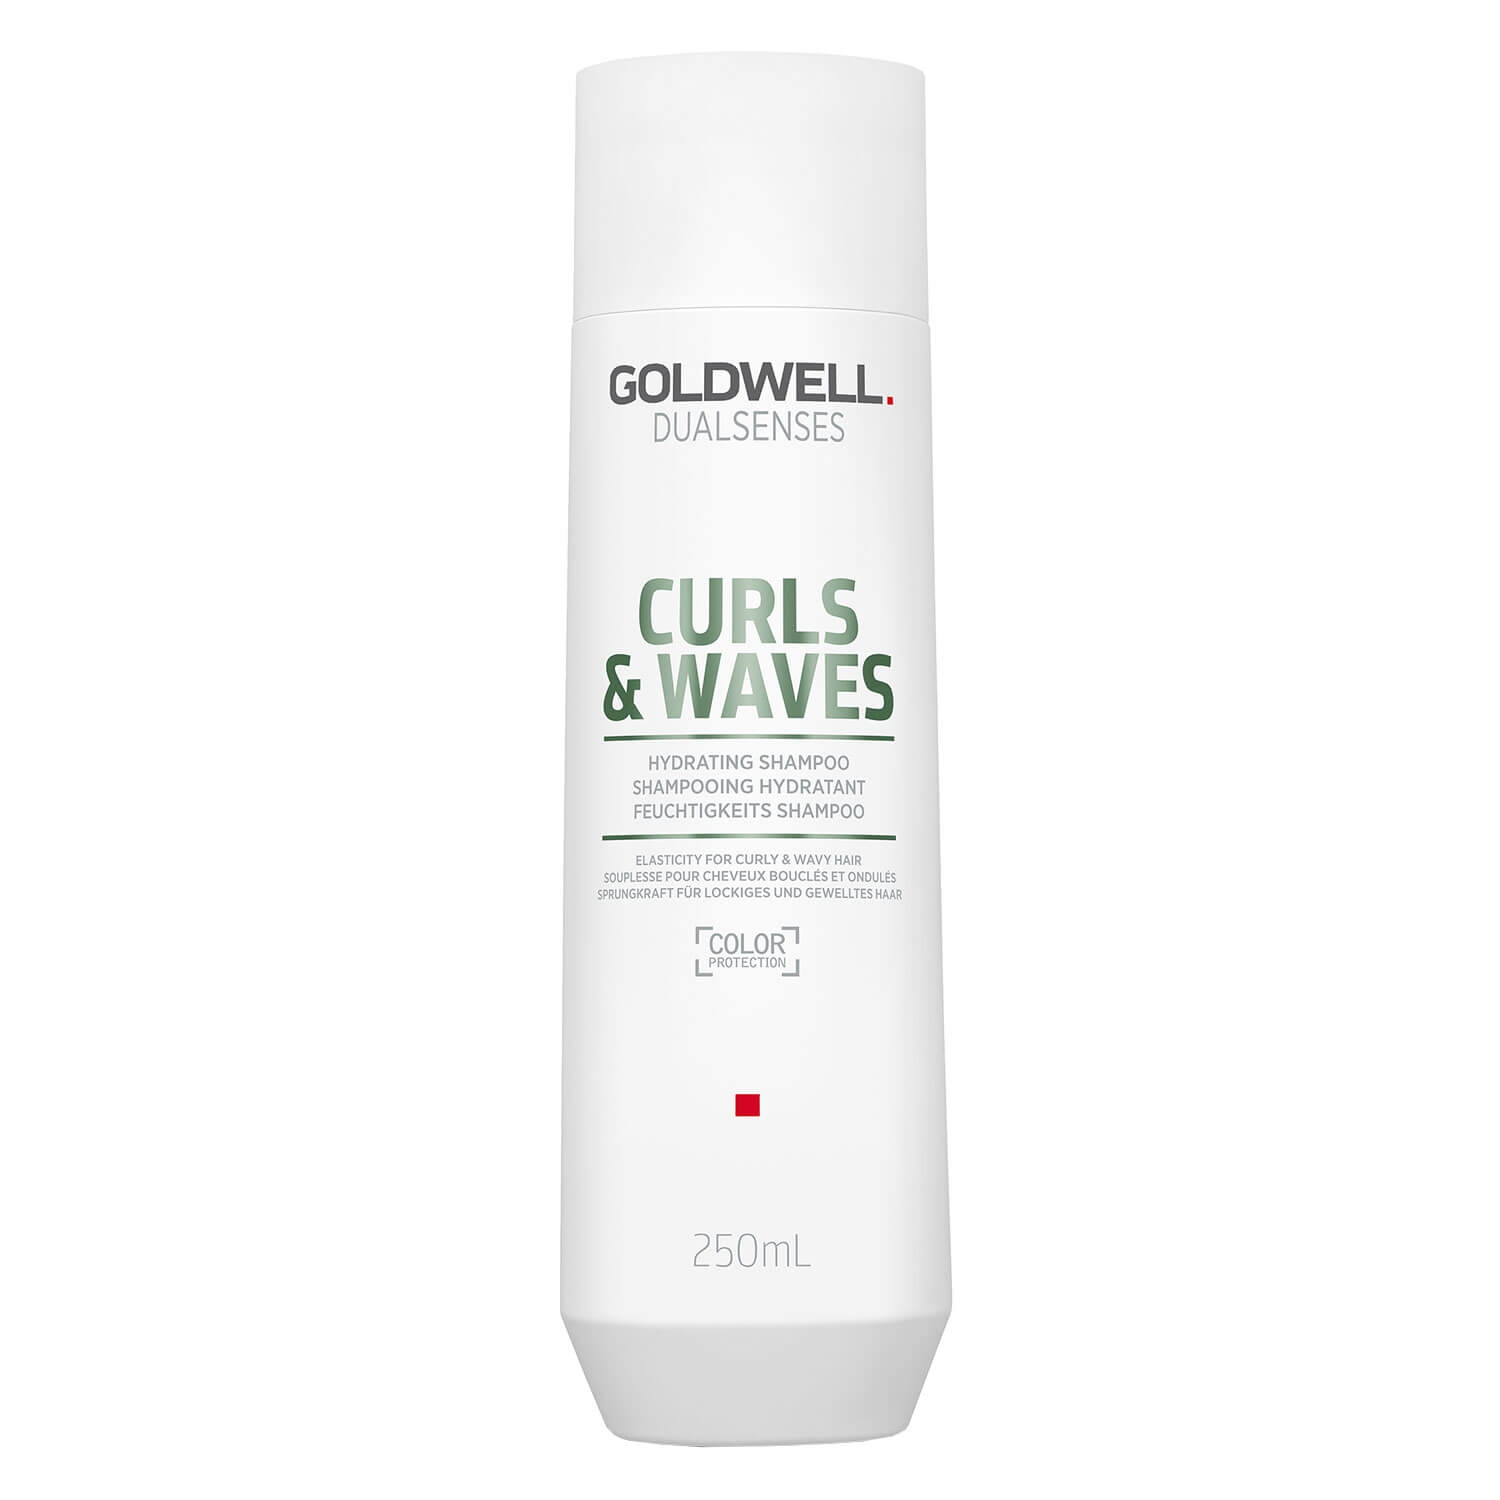 Produktbild von Dualsenses Curls & Waves - Hydrating Shampoo